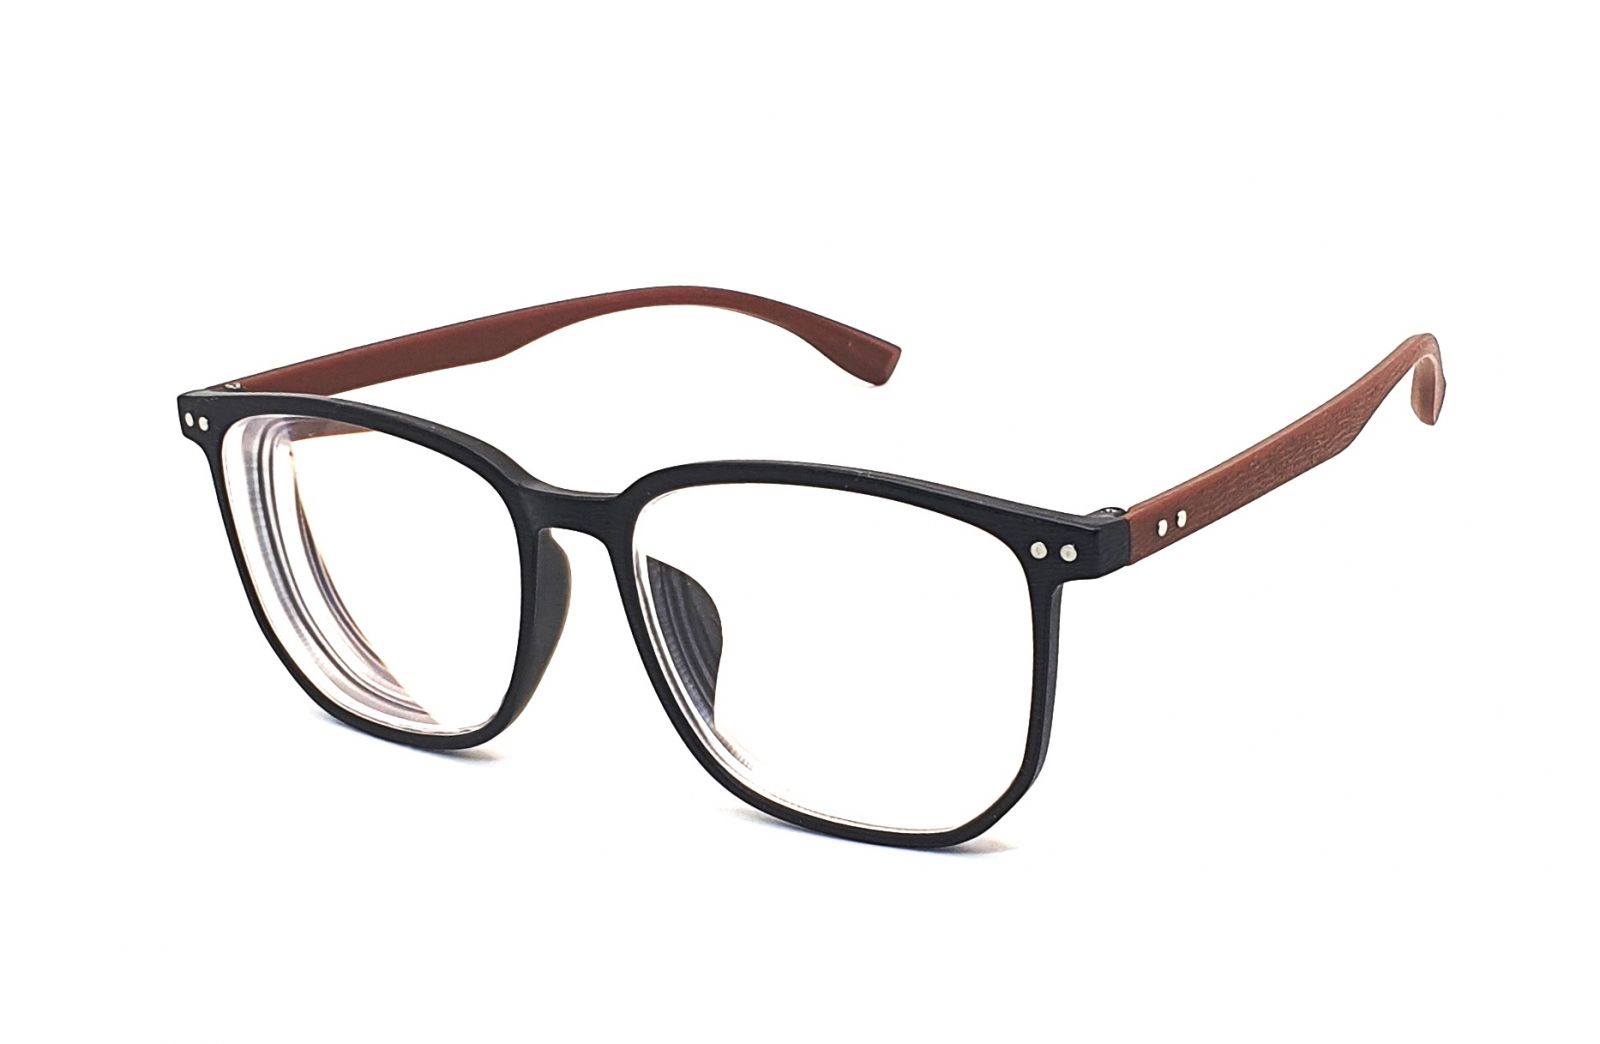 Samozabarvovací dioptrické brýle F23 / -4,00 black/brown